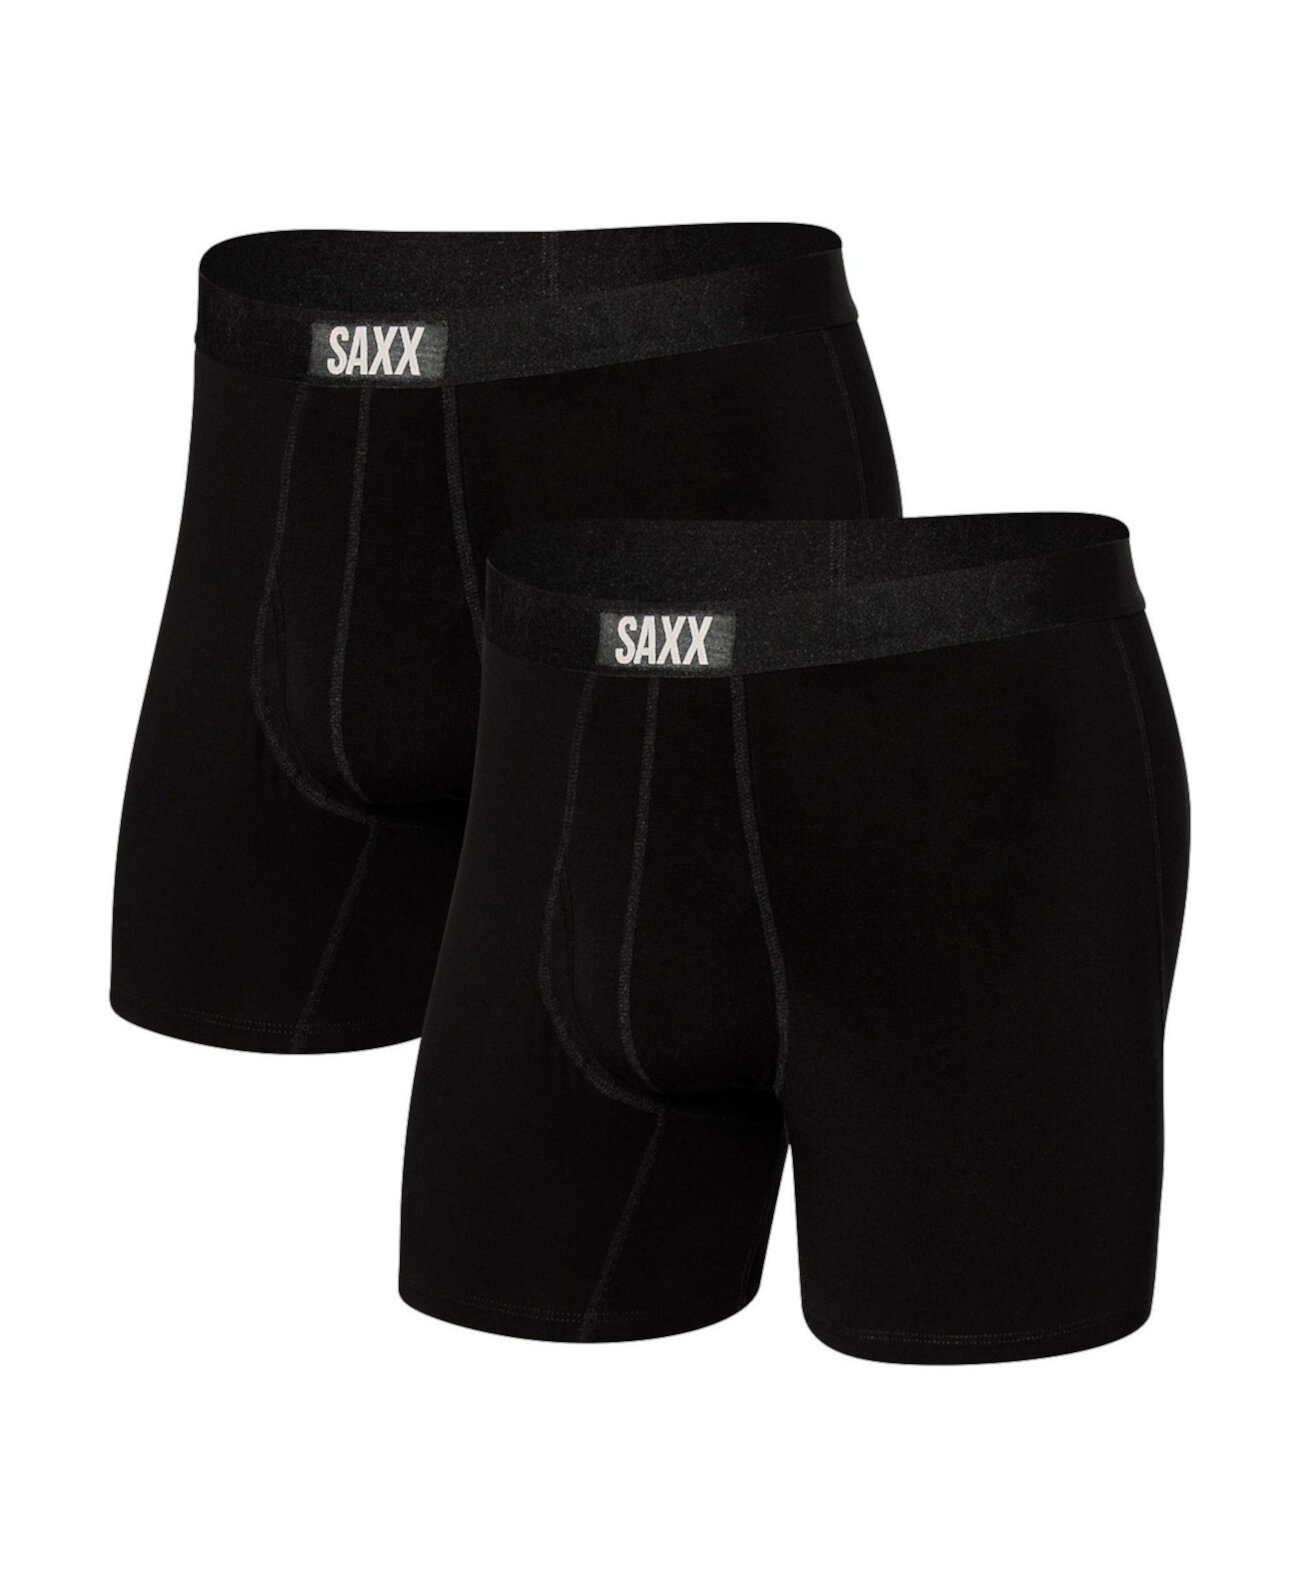 Мужские трусы-боксеры Vibe Super Soft, упаковка из 2 шт. SAXX